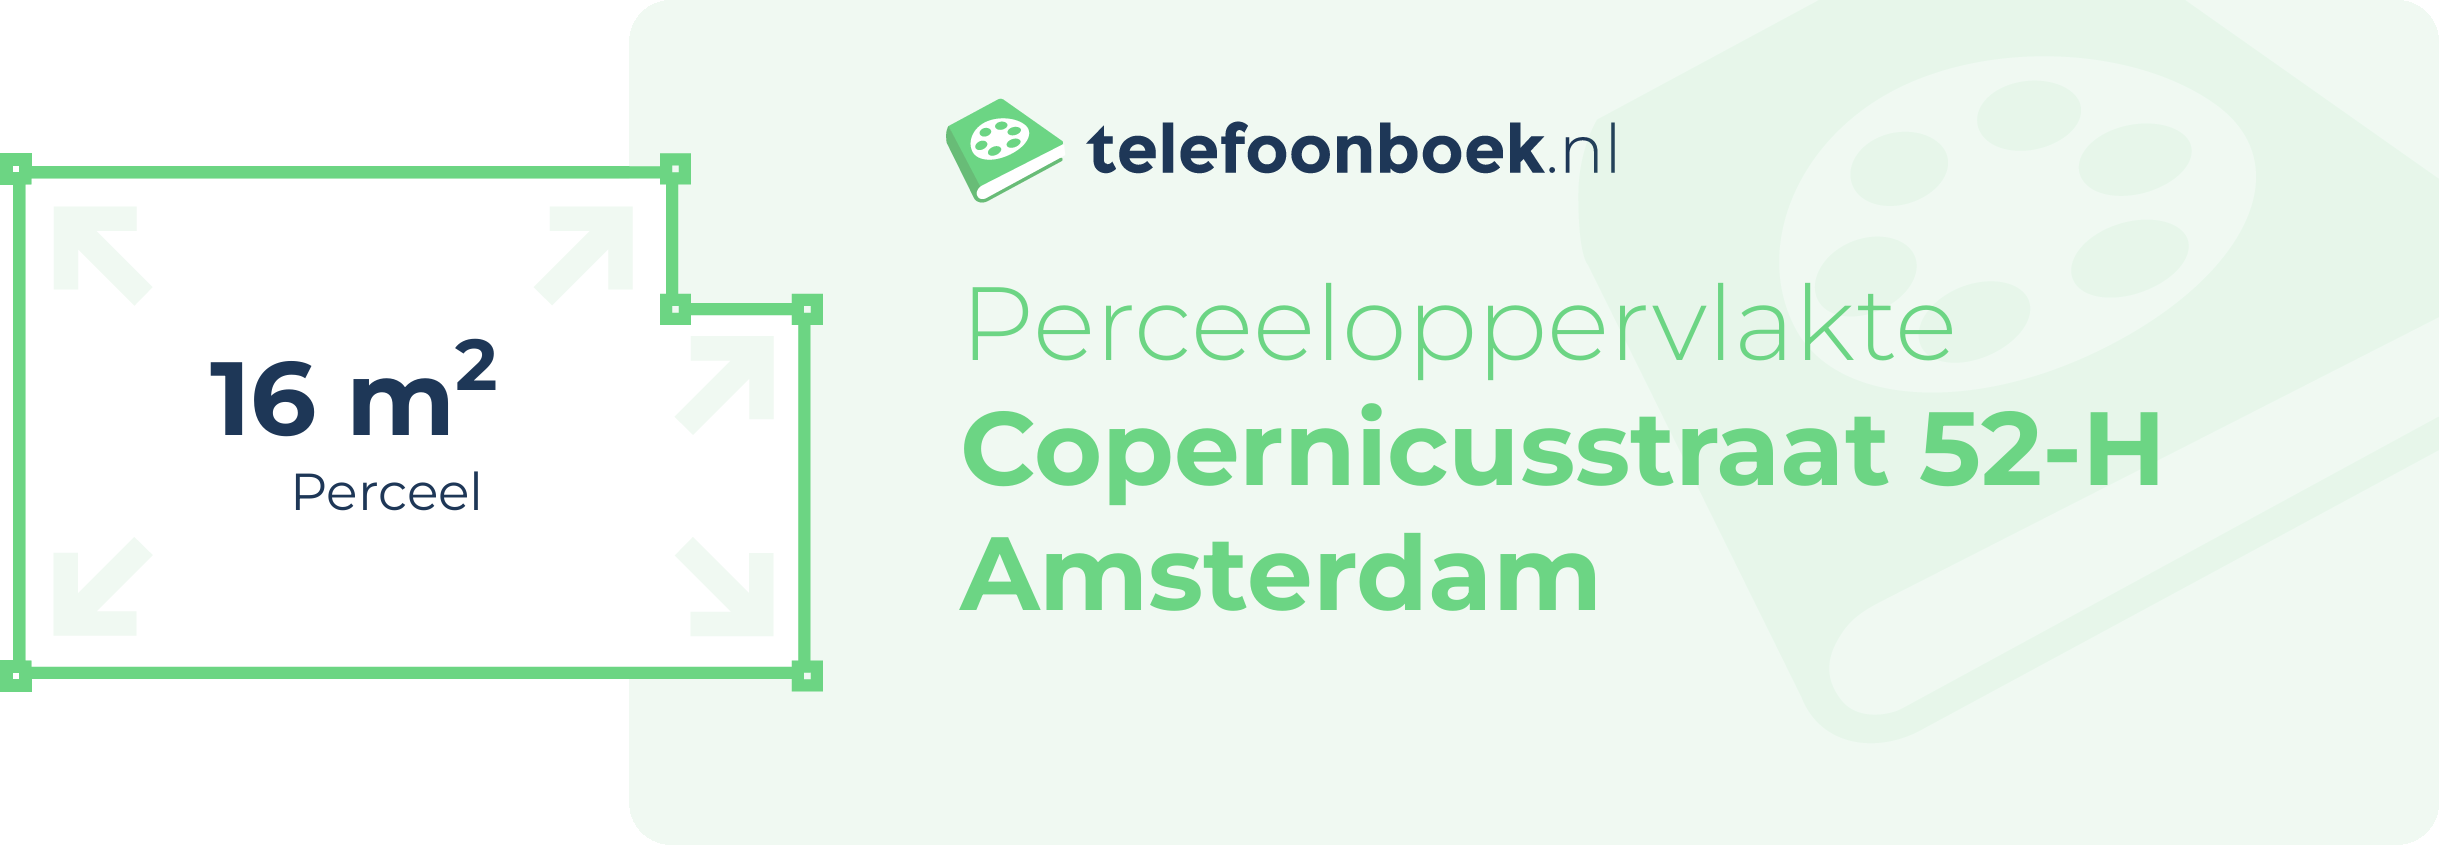 Perceeloppervlakte Copernicusstraat 52-H Amsterdam